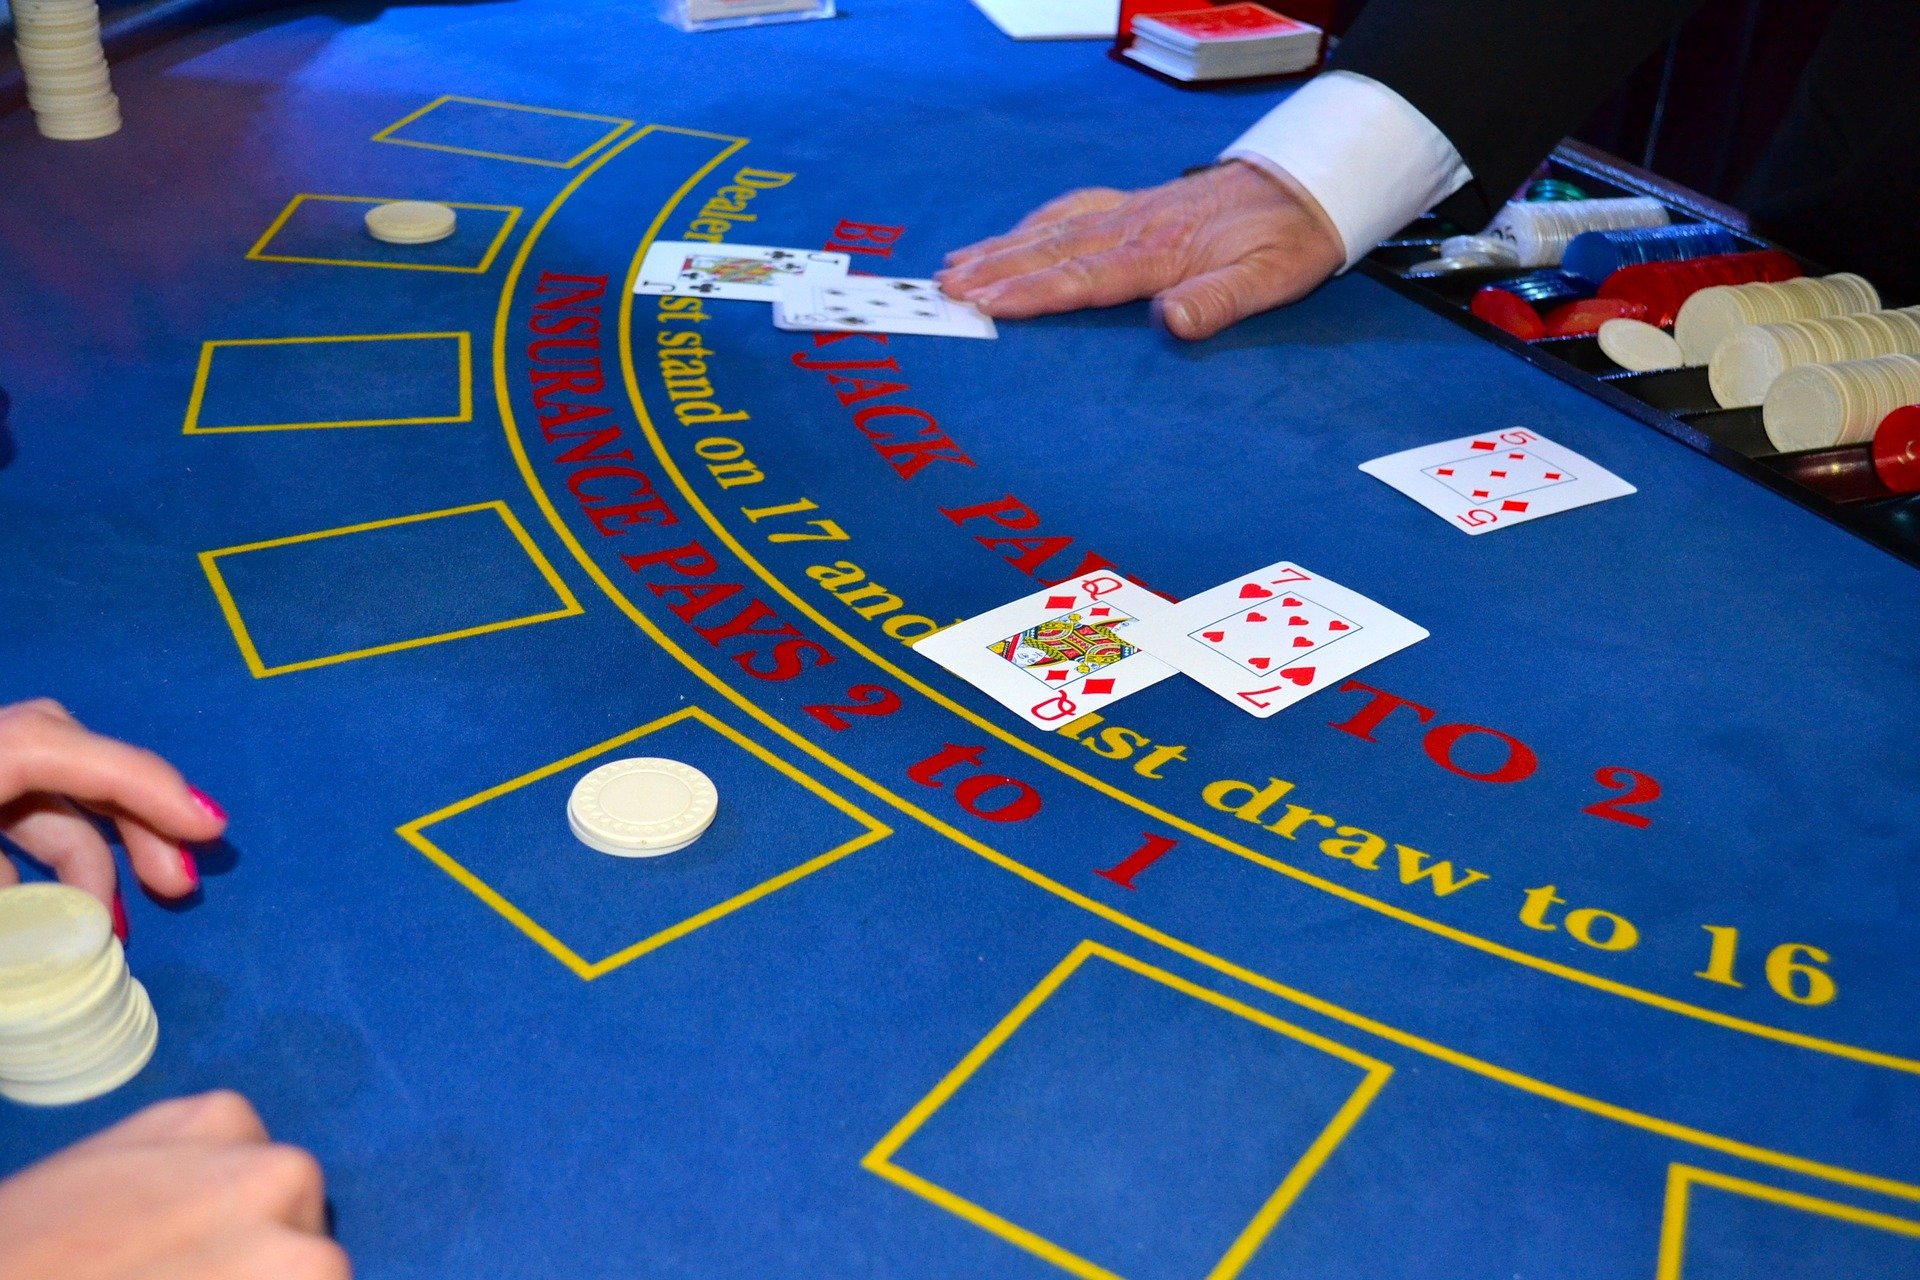 Obtenha dinheiro real no blackjack online com dicas vencedoras